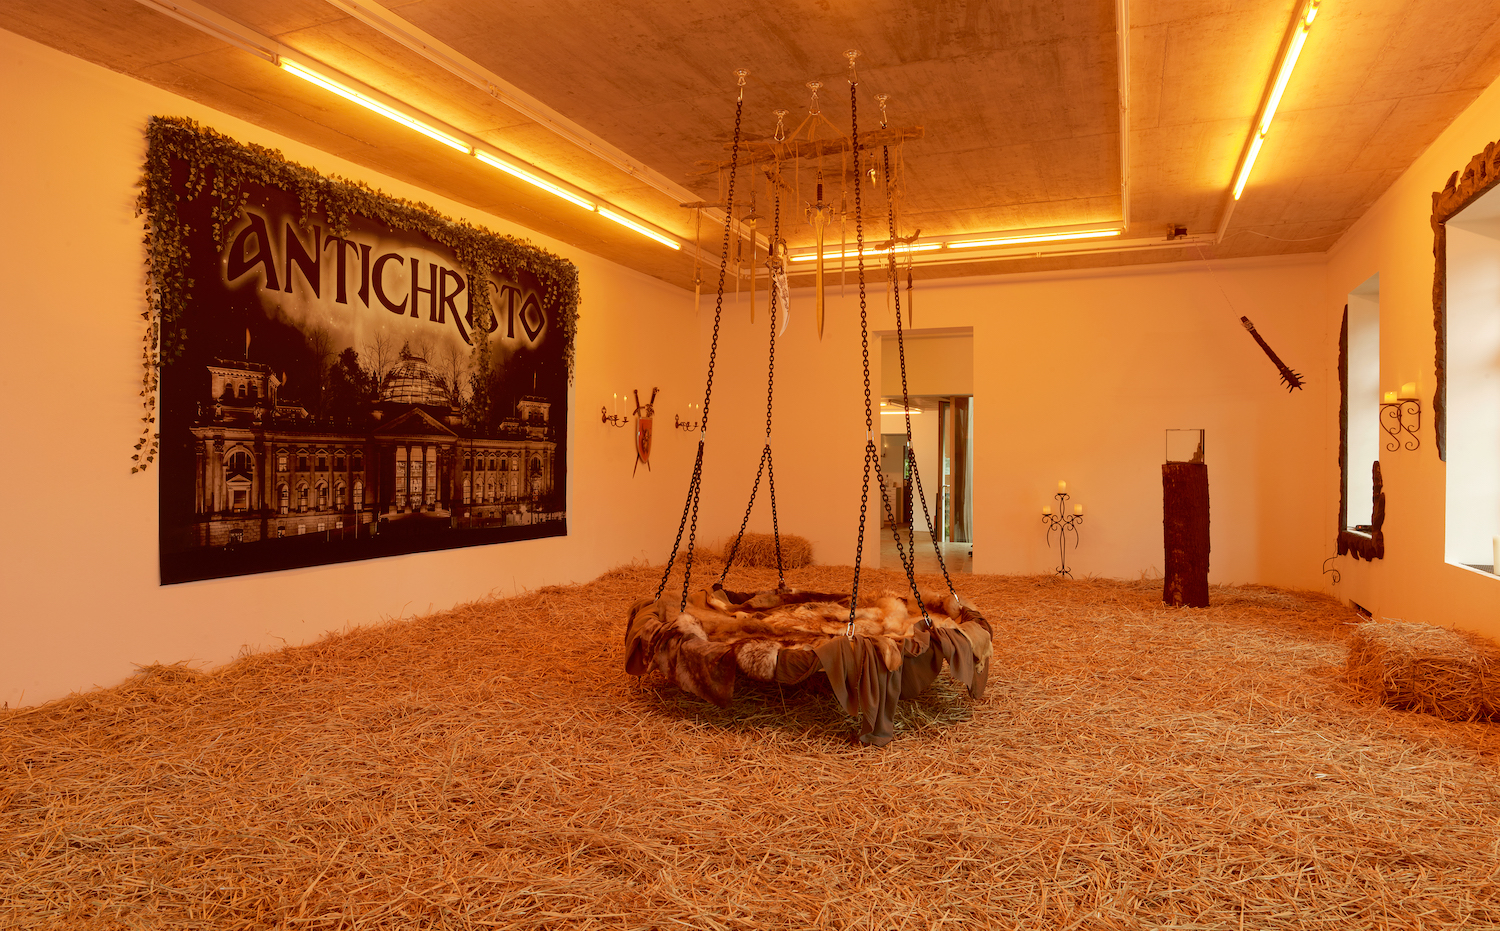 Das Erdgeschoss des Neuen Aachener Kunstvereins ist mit Stroh ausgelegt und in warmes Licht gehüllt. Zu sehen: eine fellbedeckte Schaukel mit Dolch-Mobile, ein Terrarium, um das eine Keule rotiert.